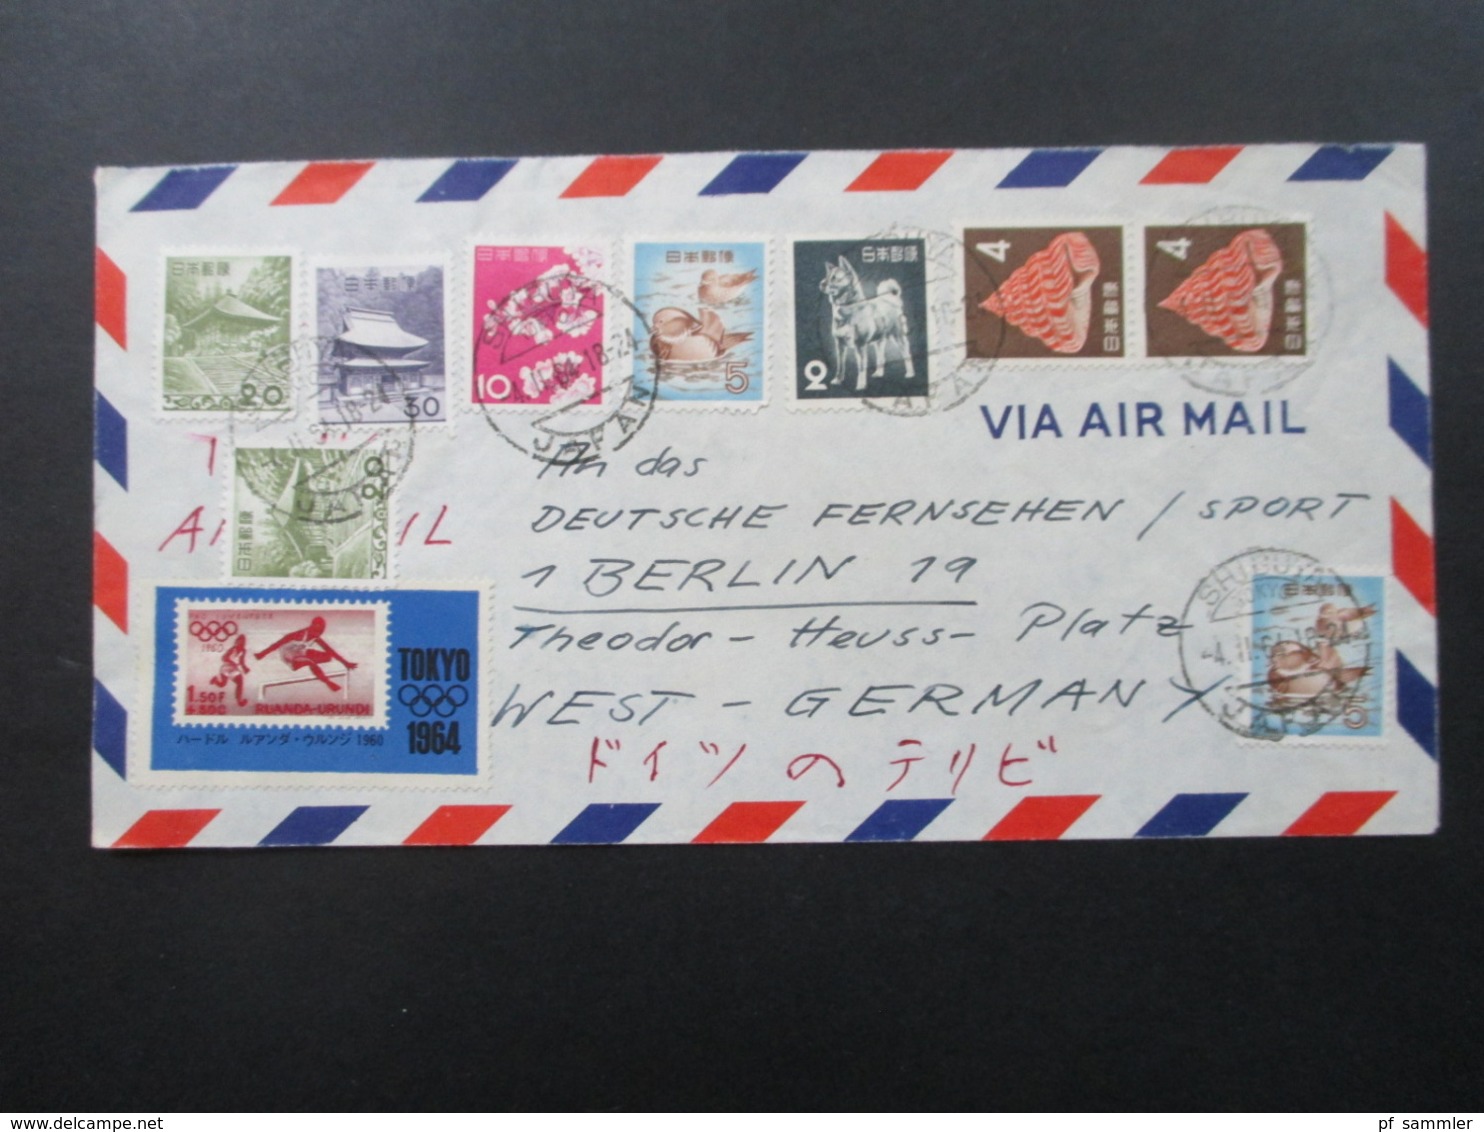 Japan 1964 Luftpostbrief / Via Air Mail Mit 11 Marken Auch Tokyo 1964 An Das Deutsche Fernsehen / Sport In Berlin - Storia Postale